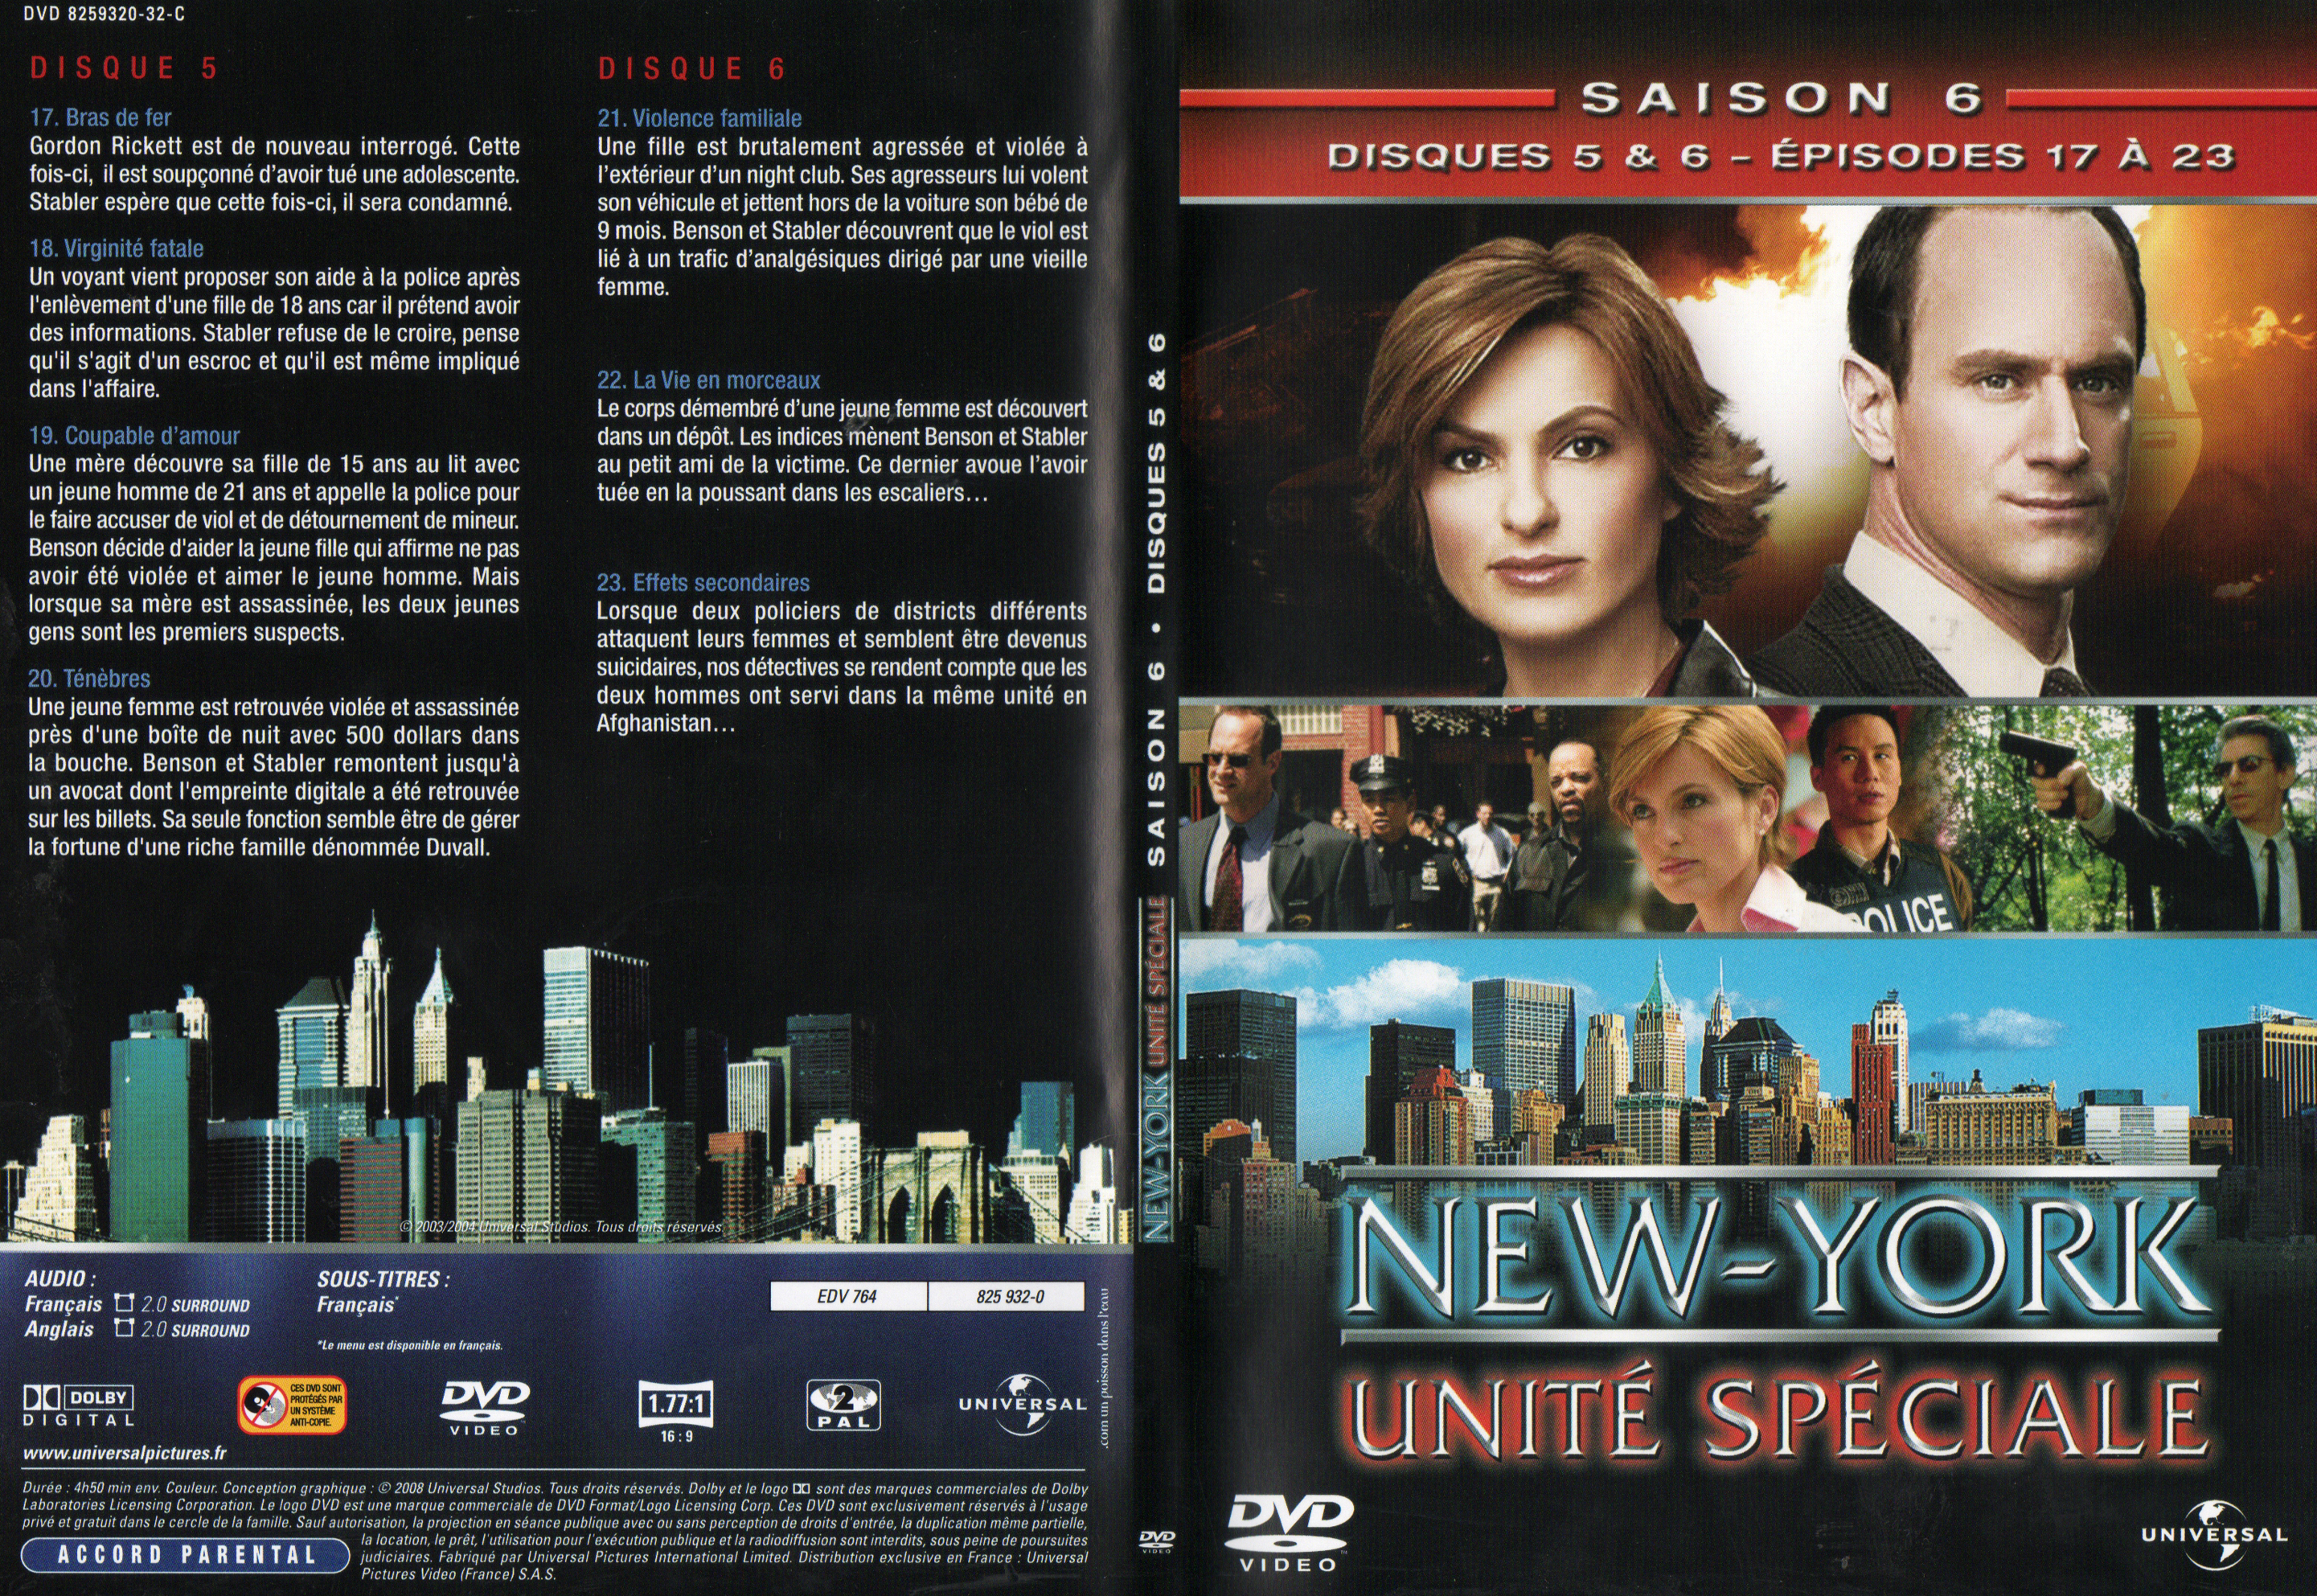 Jaquette DVD New York unit spciale saison 6 DVD 3